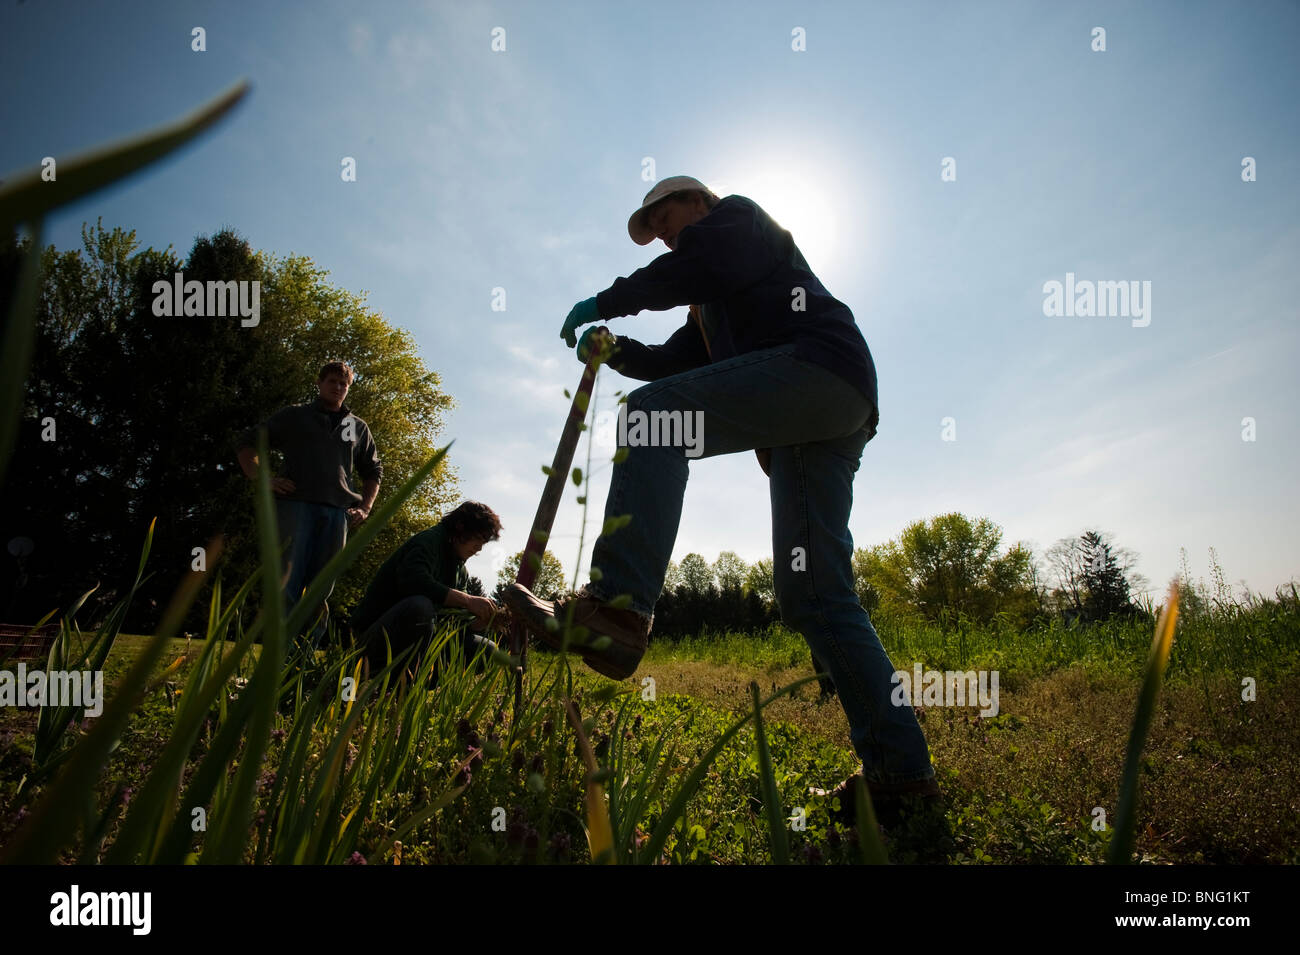 People working on organic farm Stock Photo